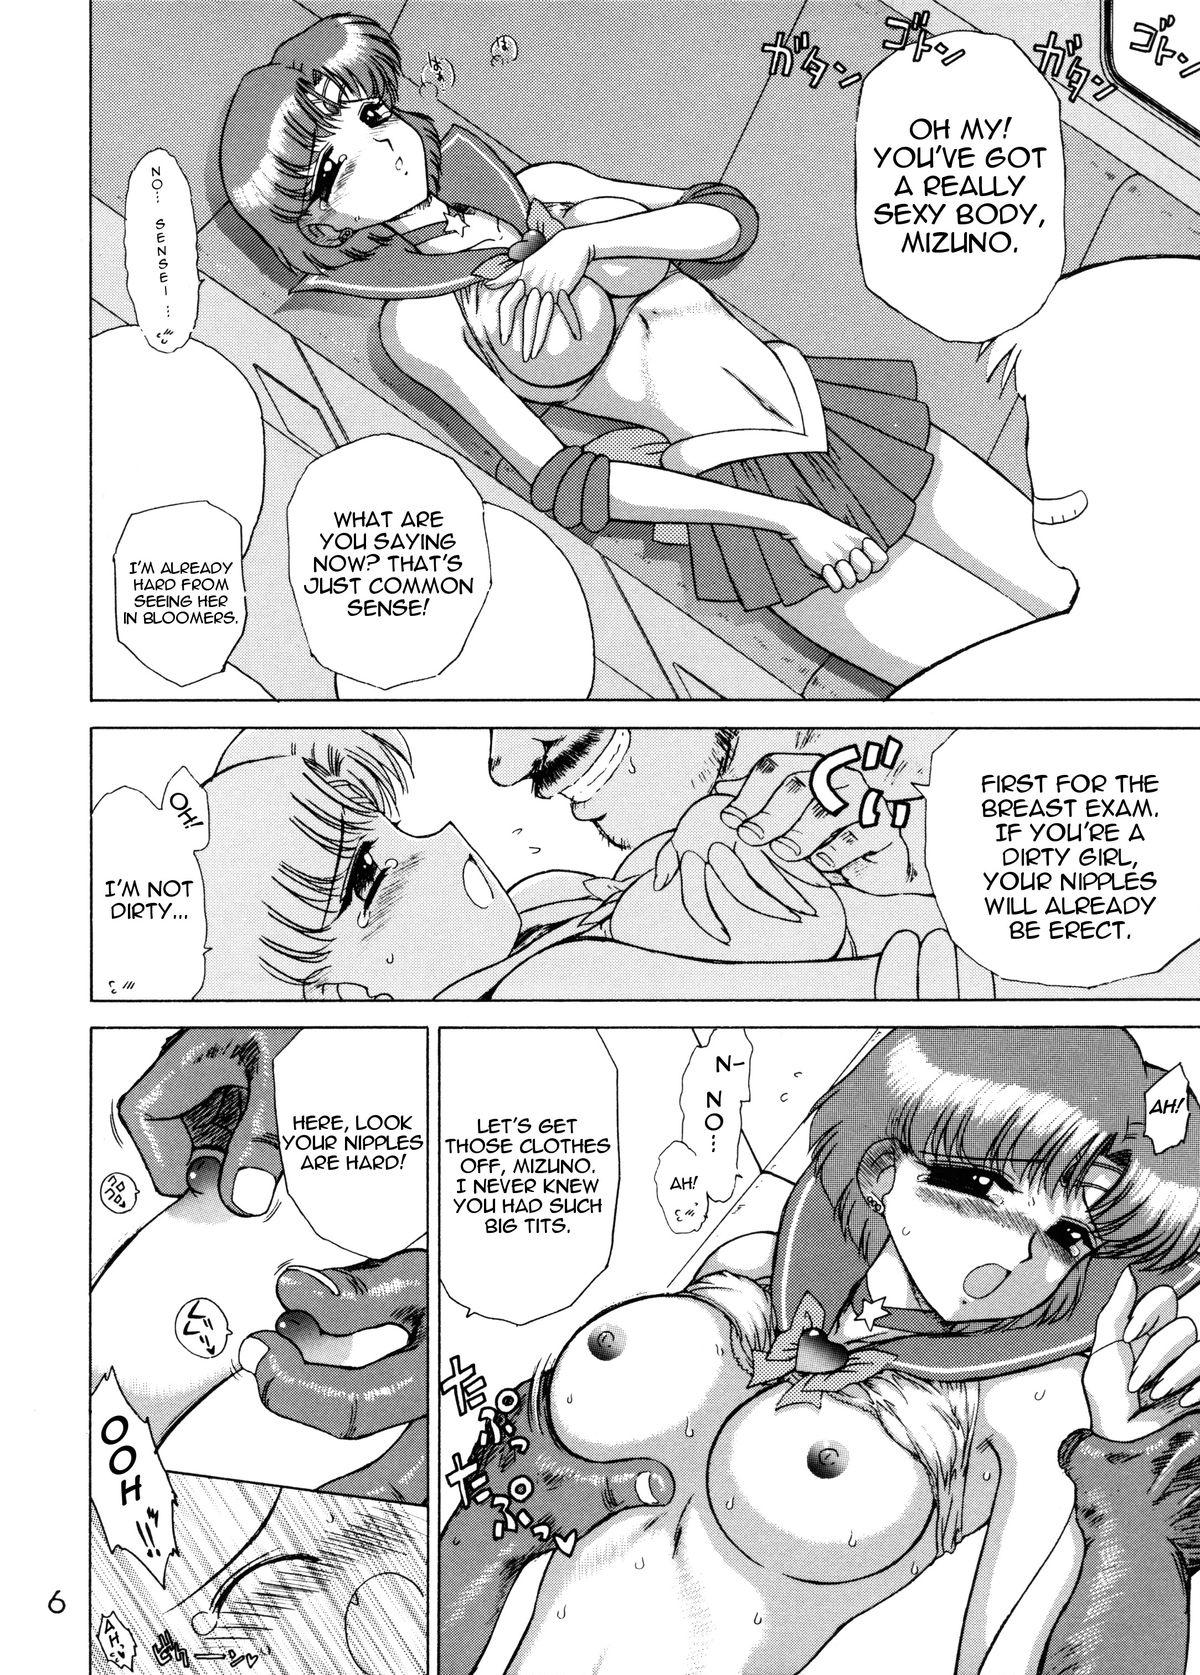 Compilation Anubis - Sailor moon Pussylick - Page 5